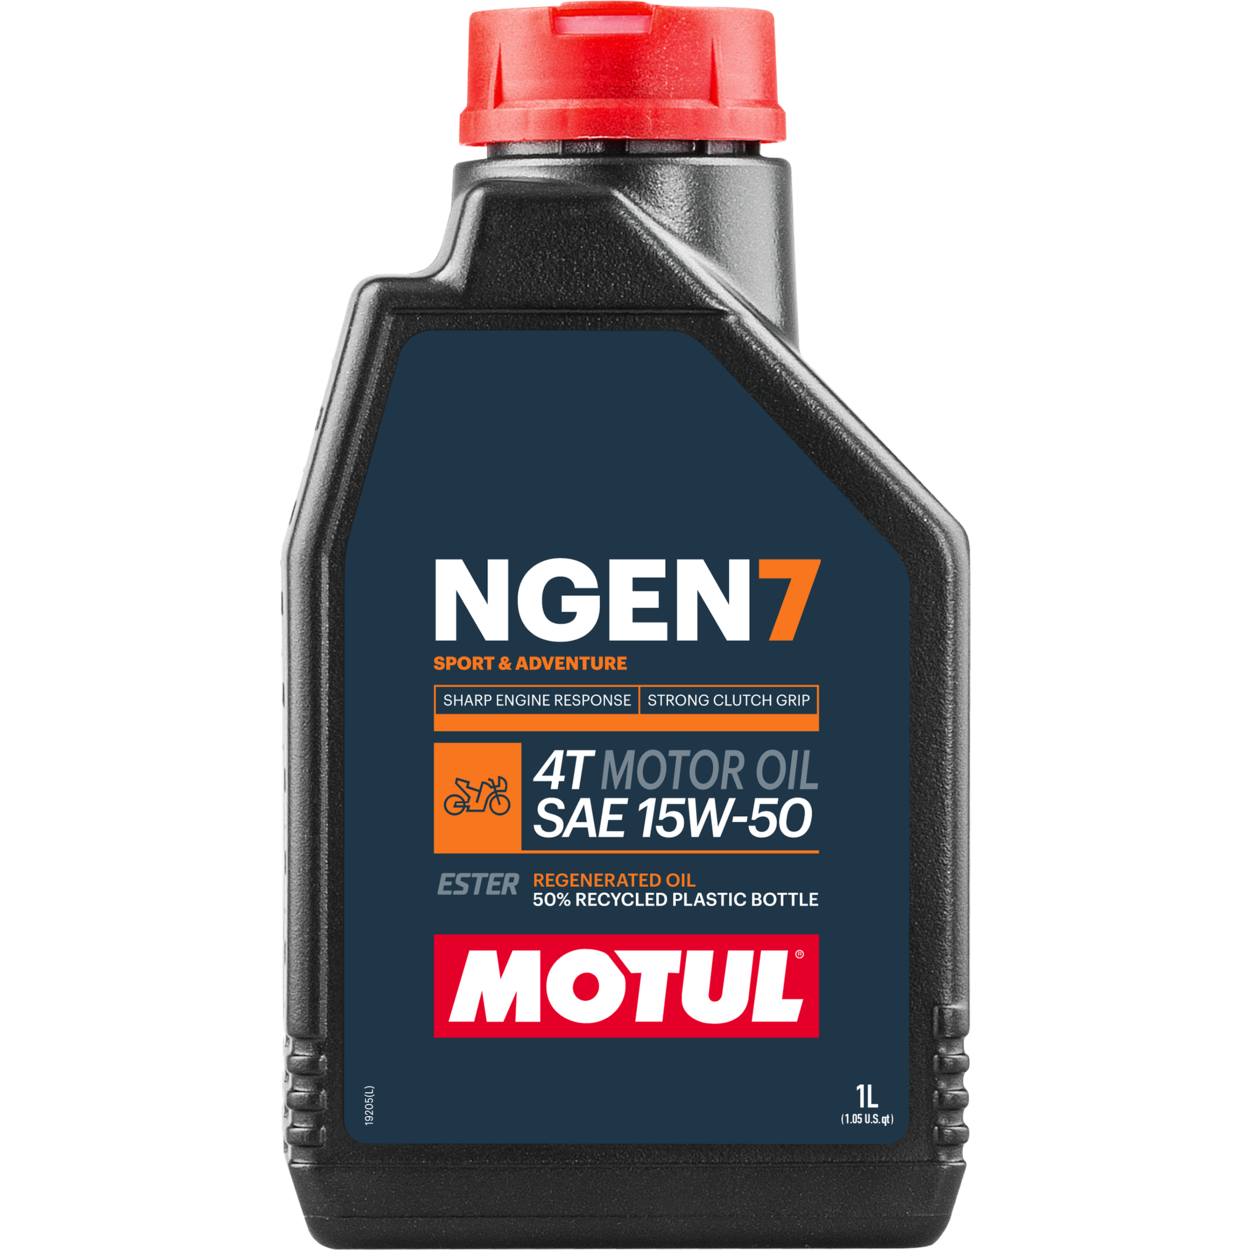 111824-1 MOTUL NGEN 7 15W-50 4T est la meilleure huile moteur 4 temps de sa catégorie, basée sur une combinaison d'huiles de base vierges et d'additifs les plus fins, mélangés à des esters synthétiques et des huiles régénérées de haute qualité.